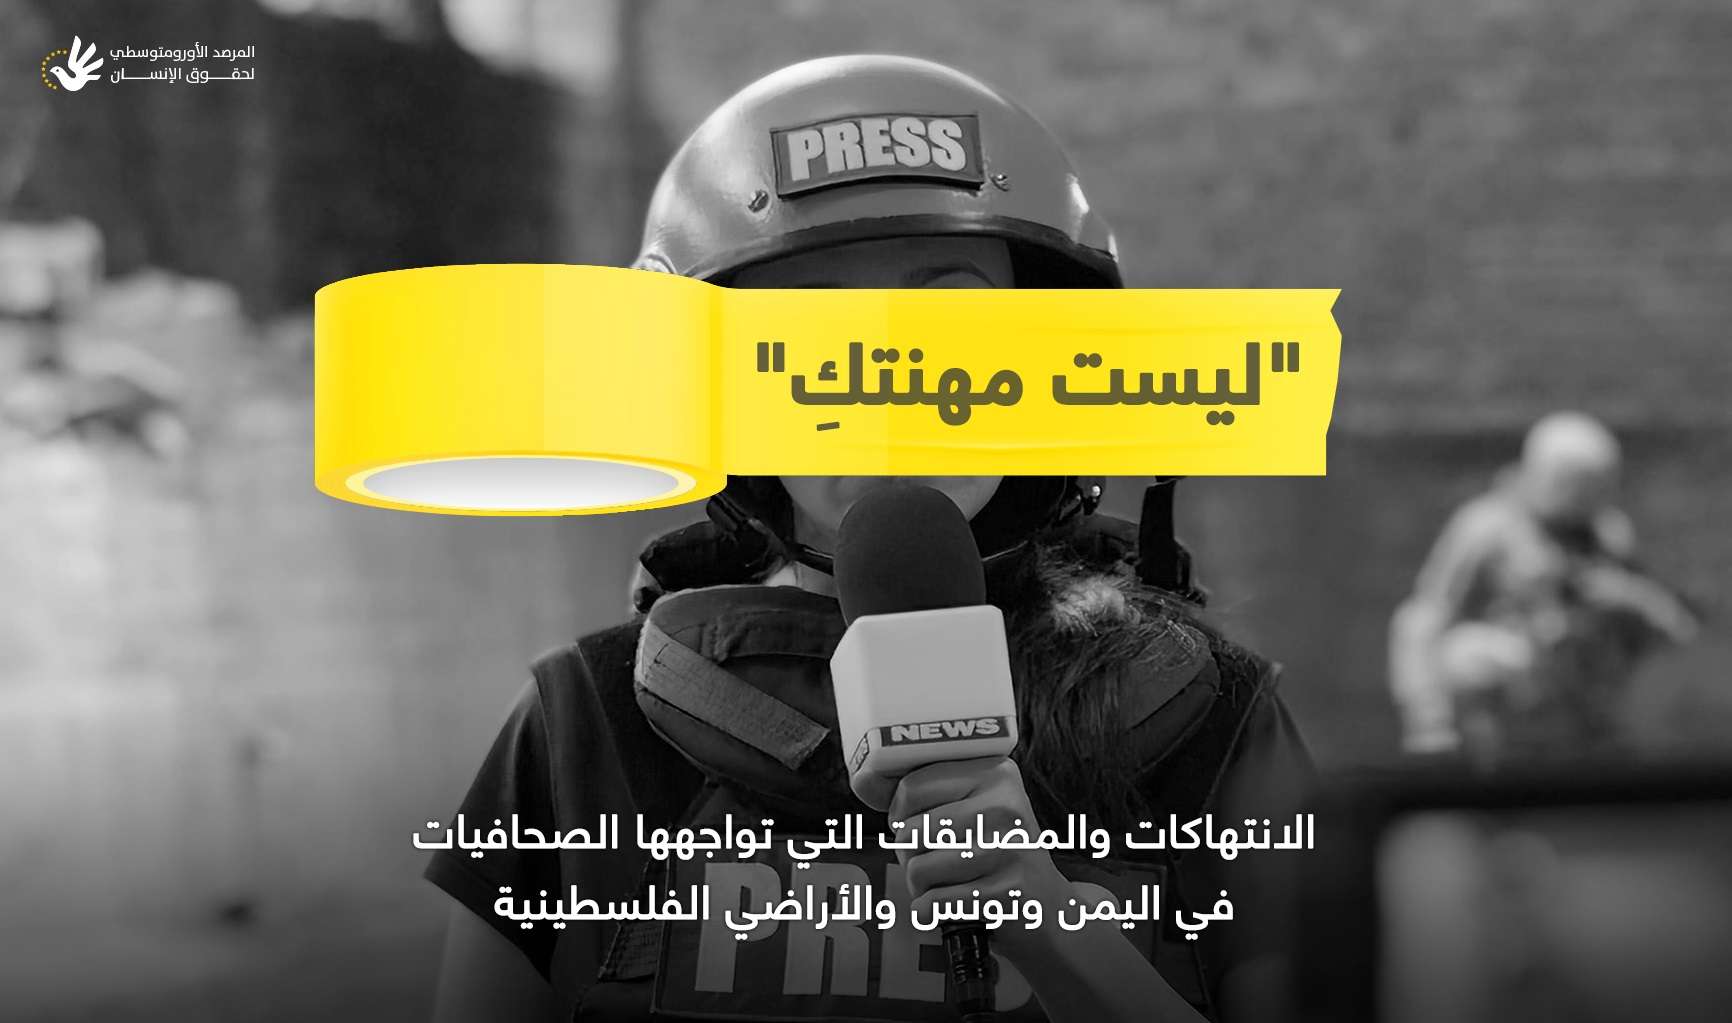 المرصد الأورومتوسطي: قرارات حوثية ضاعفت القيود على الصحفيات في اليمن